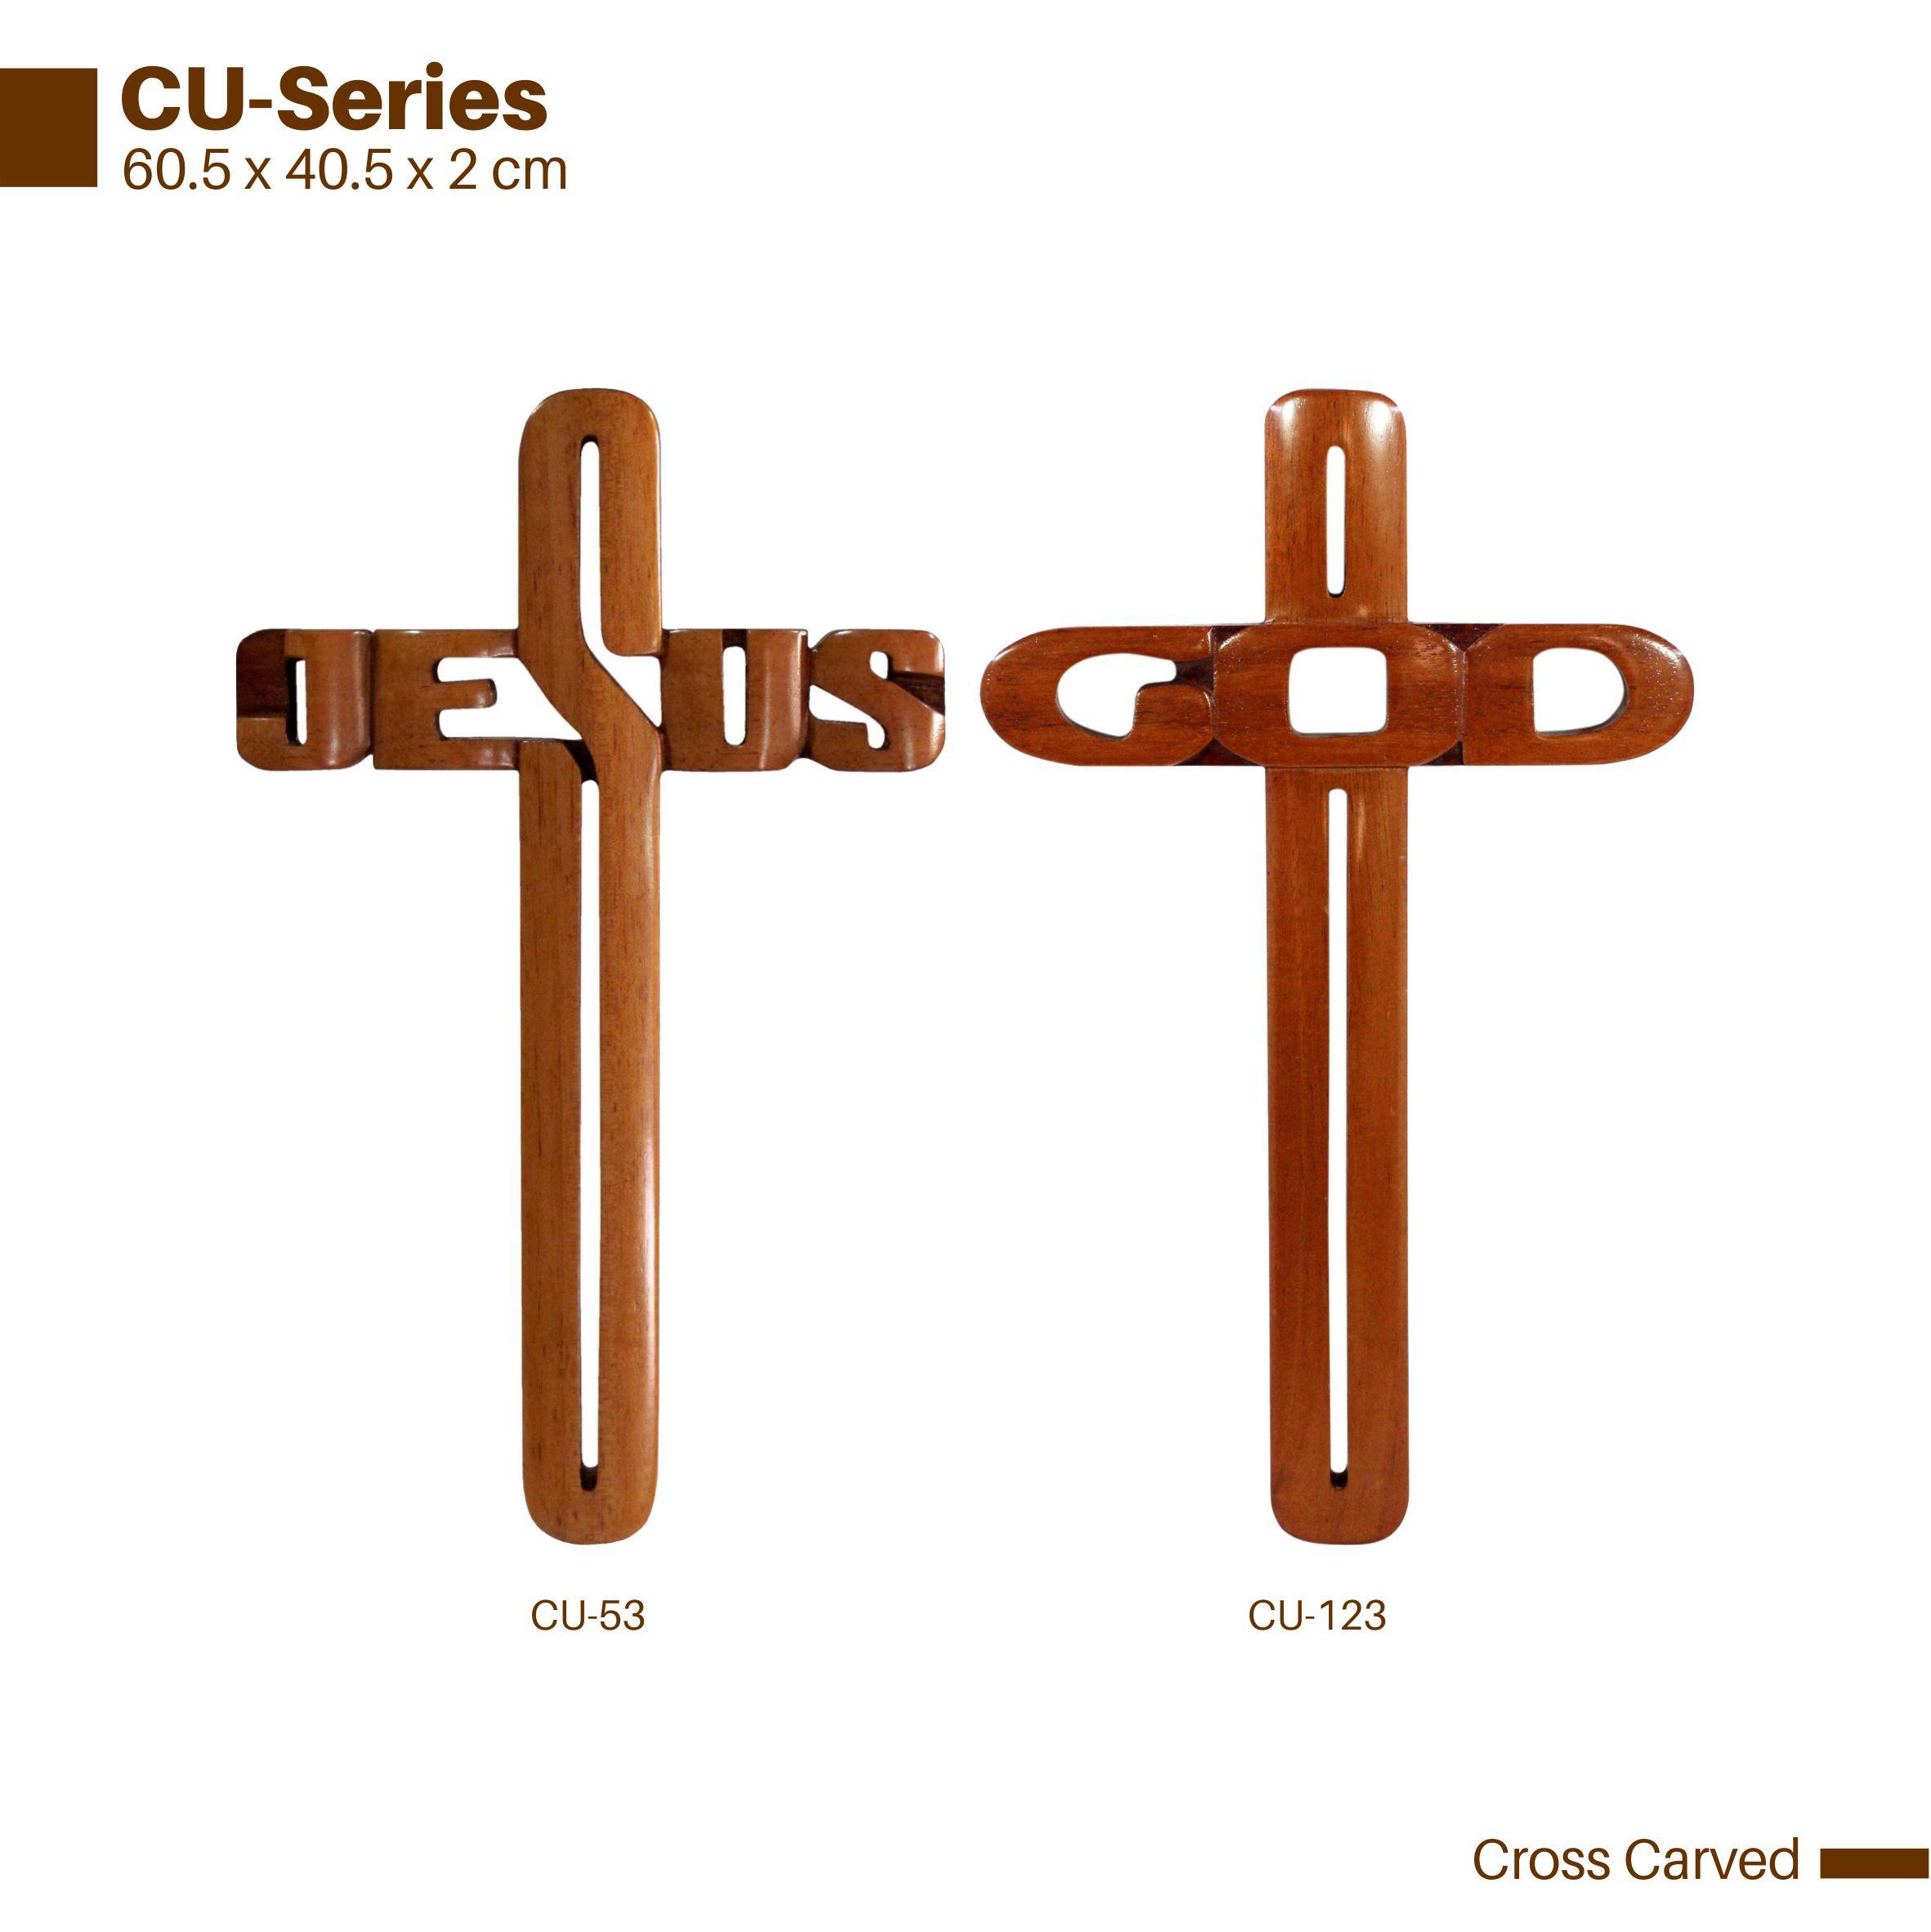 CU-series